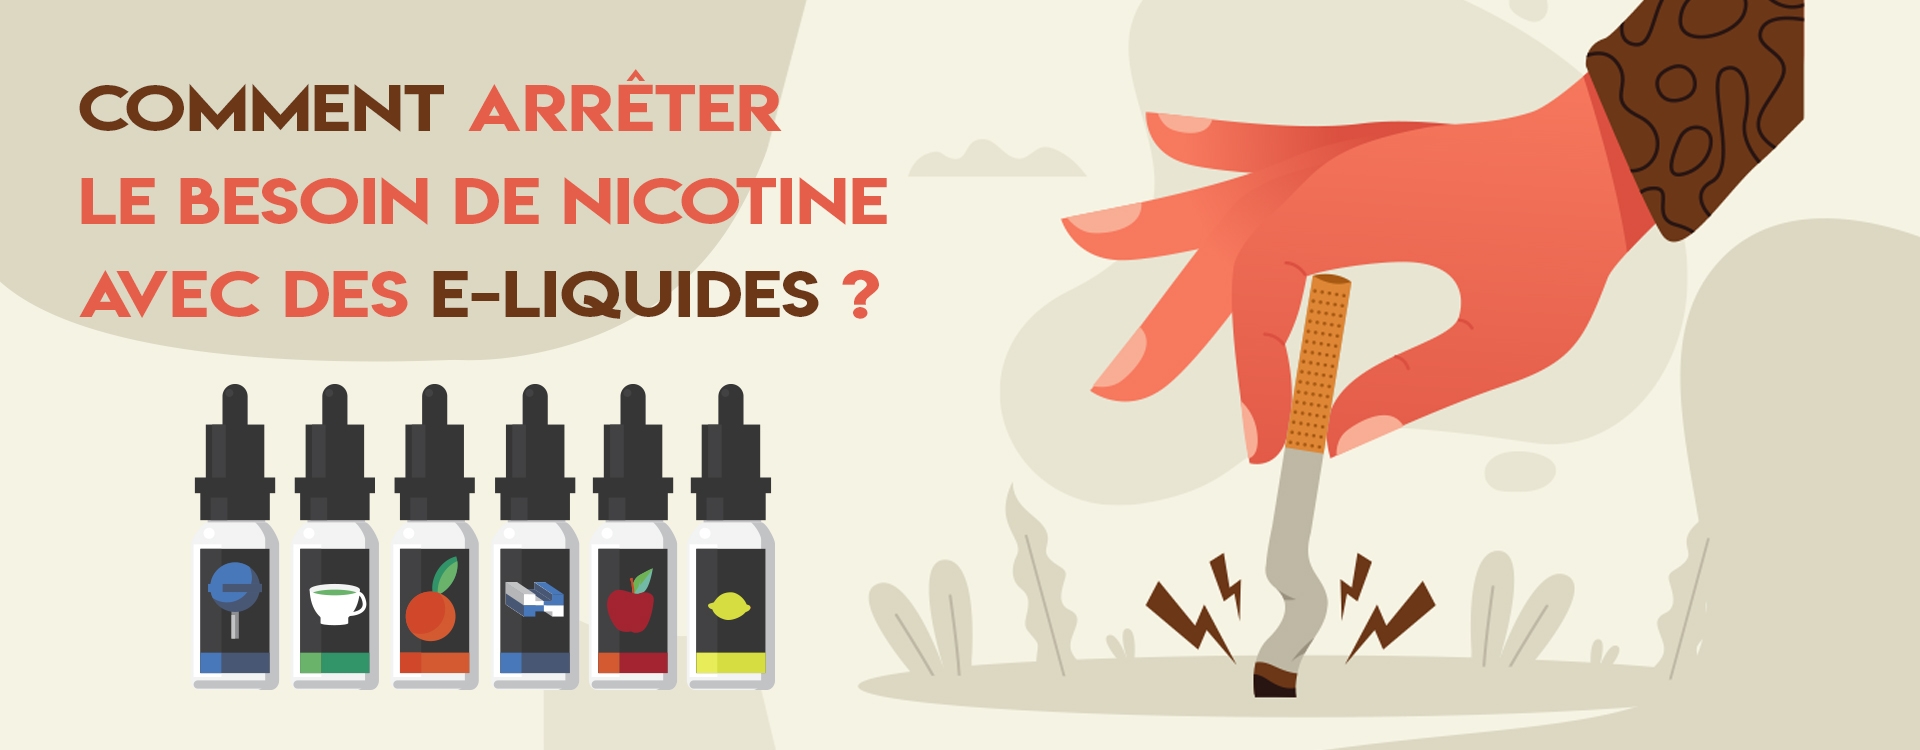 Comment arrêter le besoin de nicotine avec des e-liquides ?